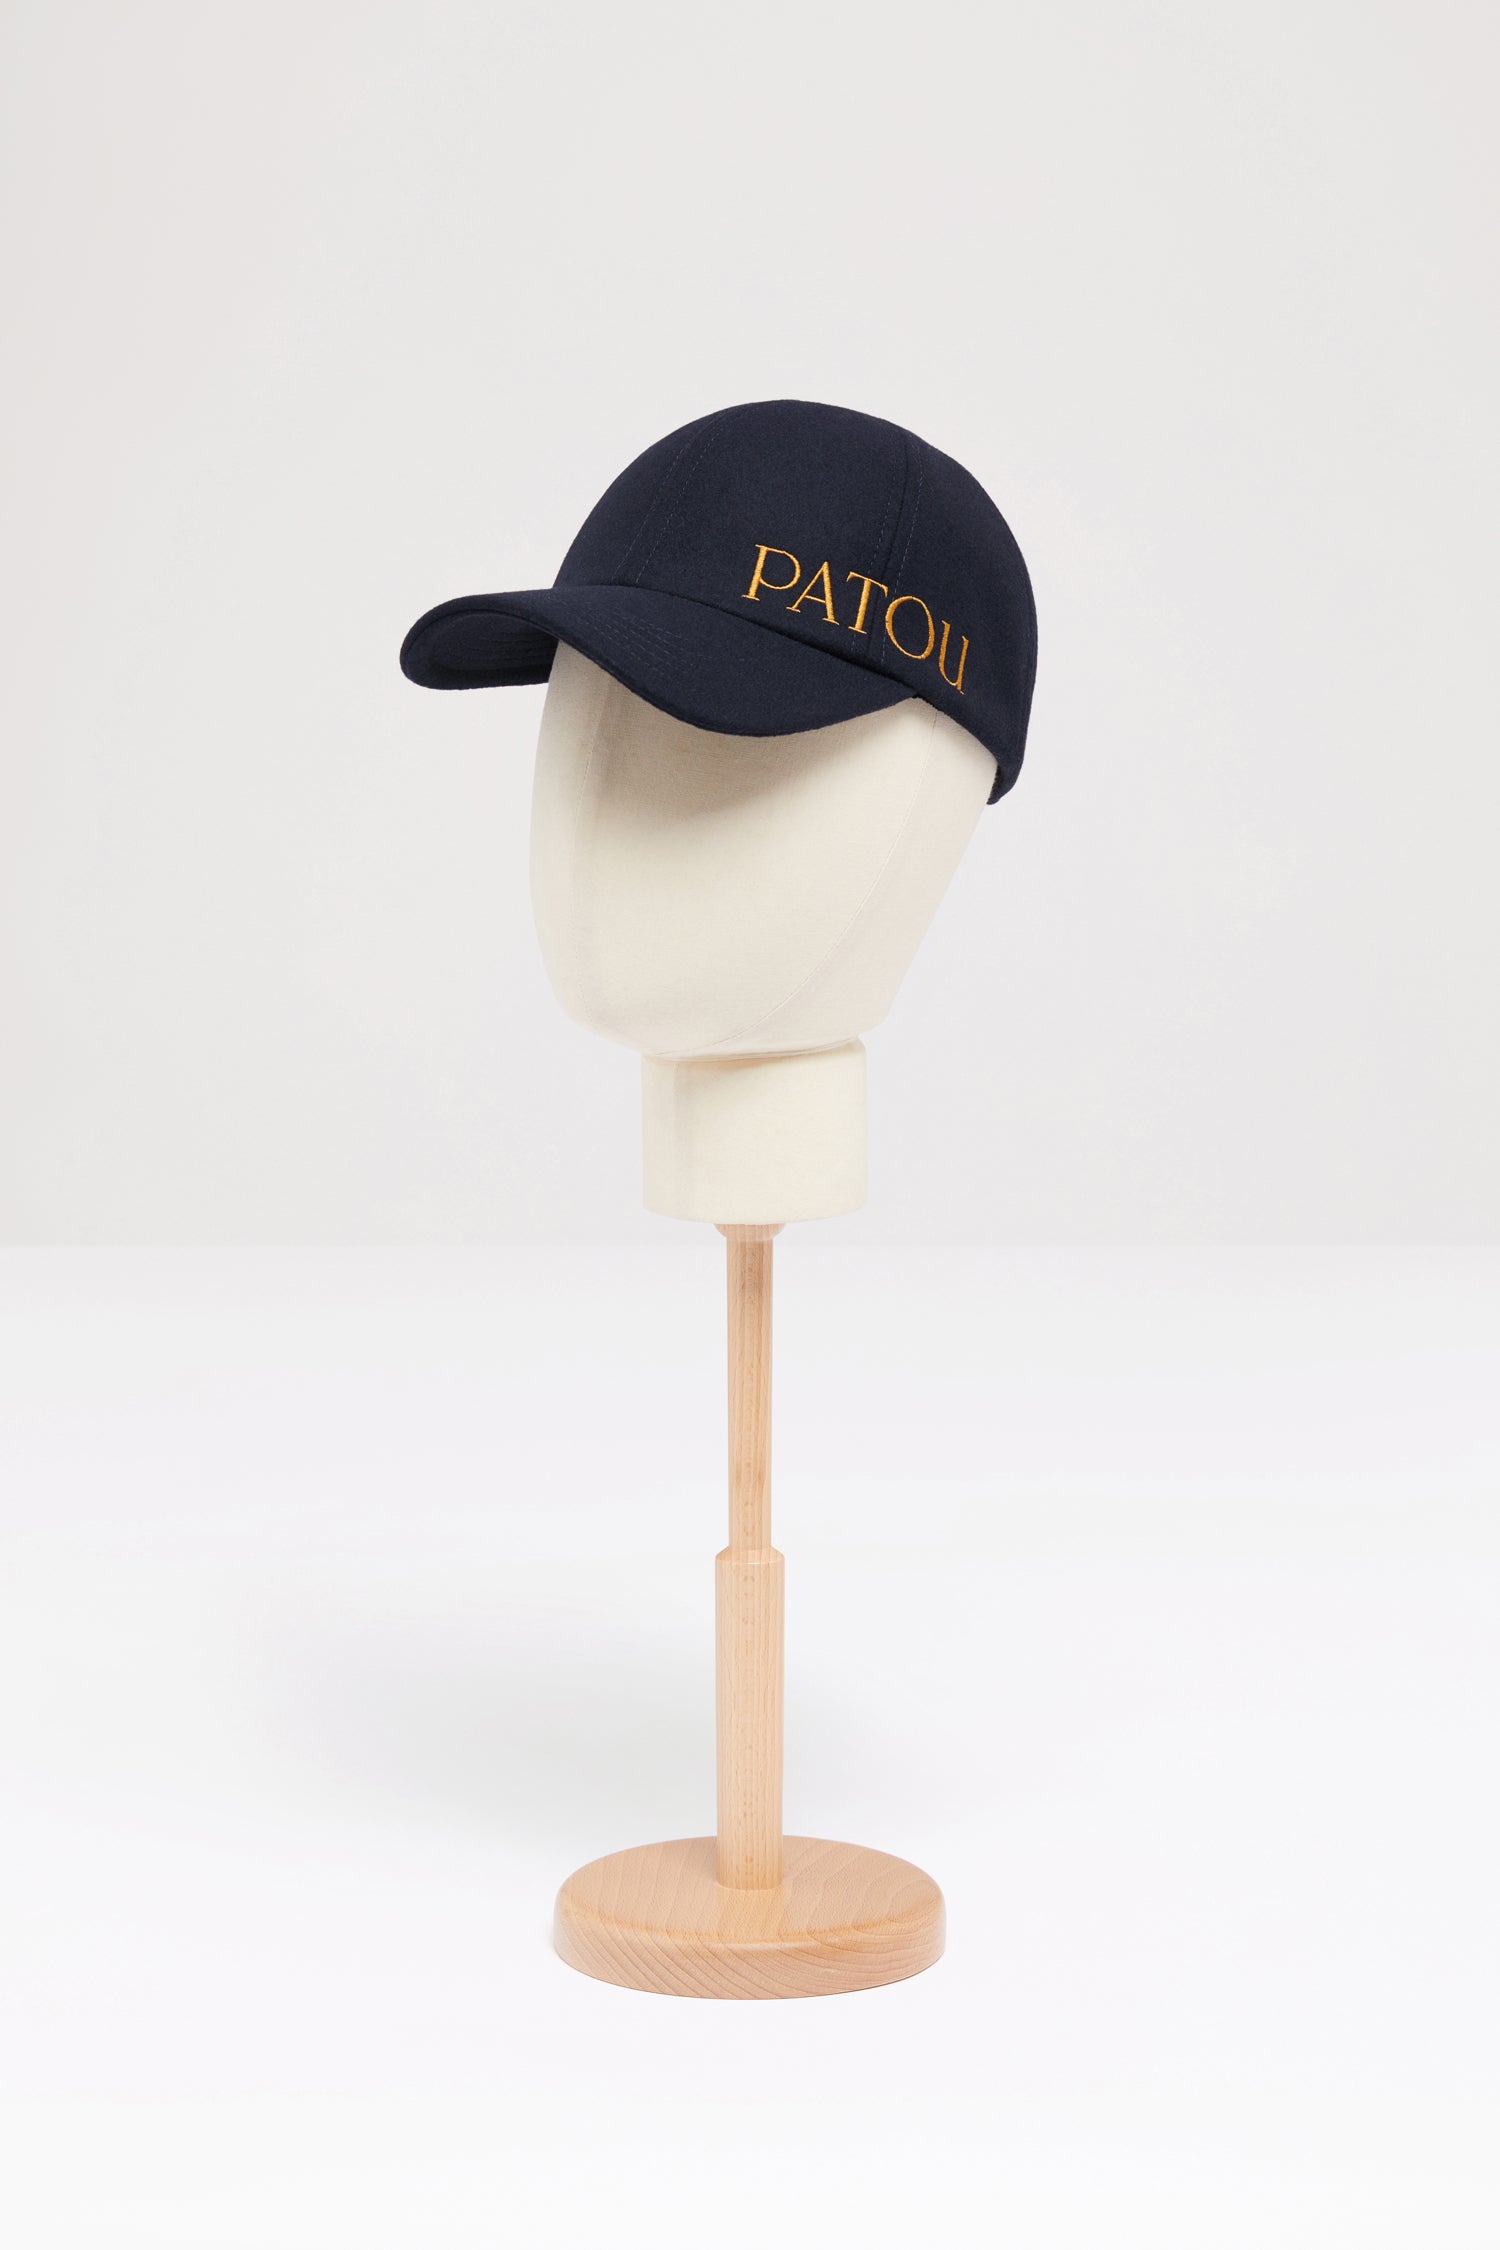 Patou | Patou embroidered felt cap